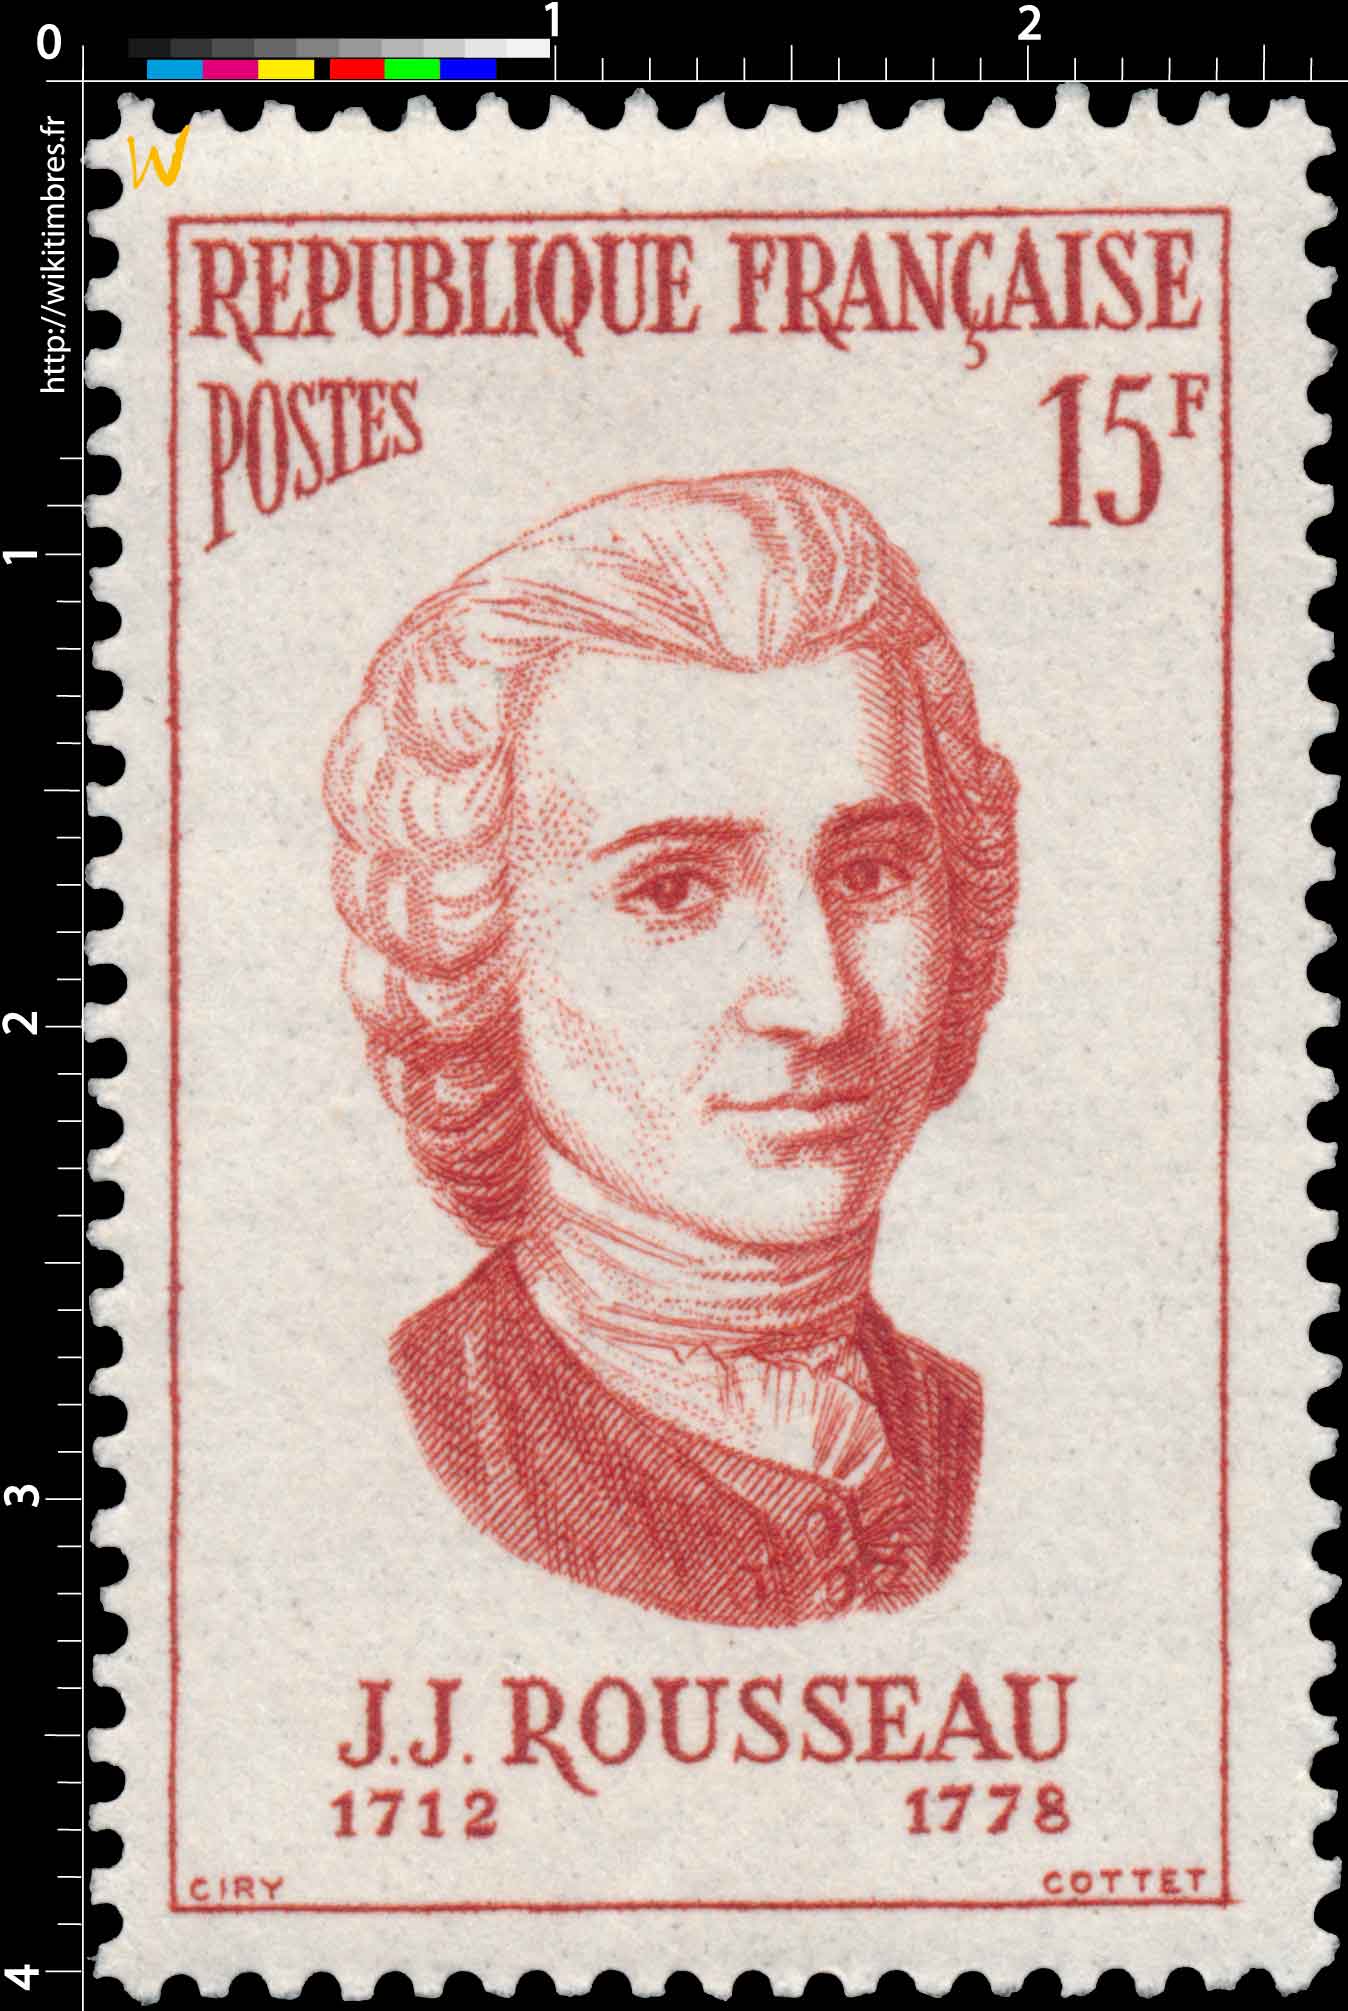 J.J. ROUSSEAU 1712-1778